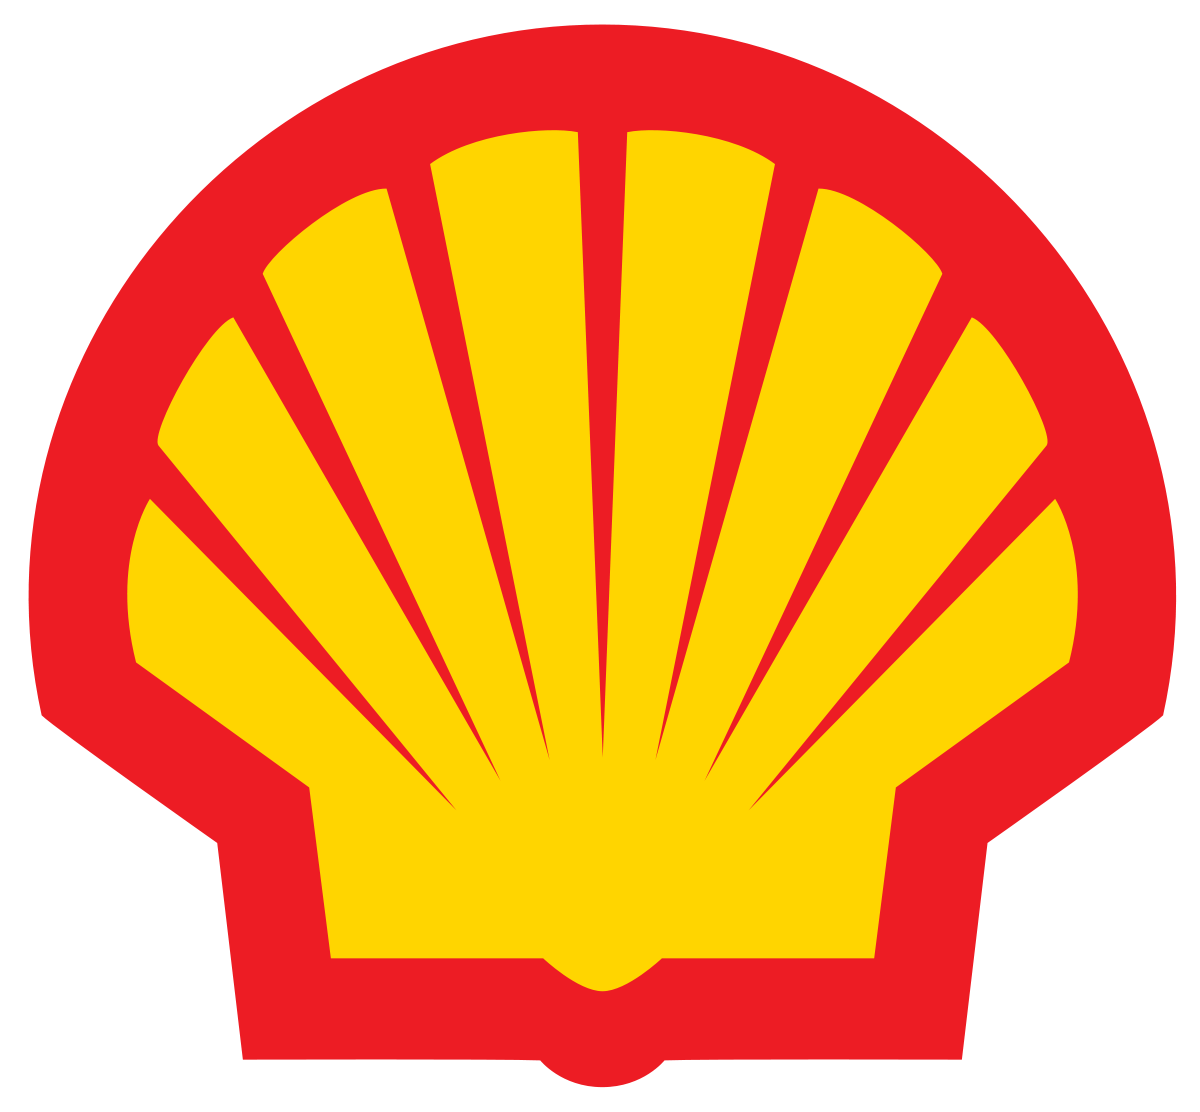 Pakistan Oil Company Logo - Shell Oil Company